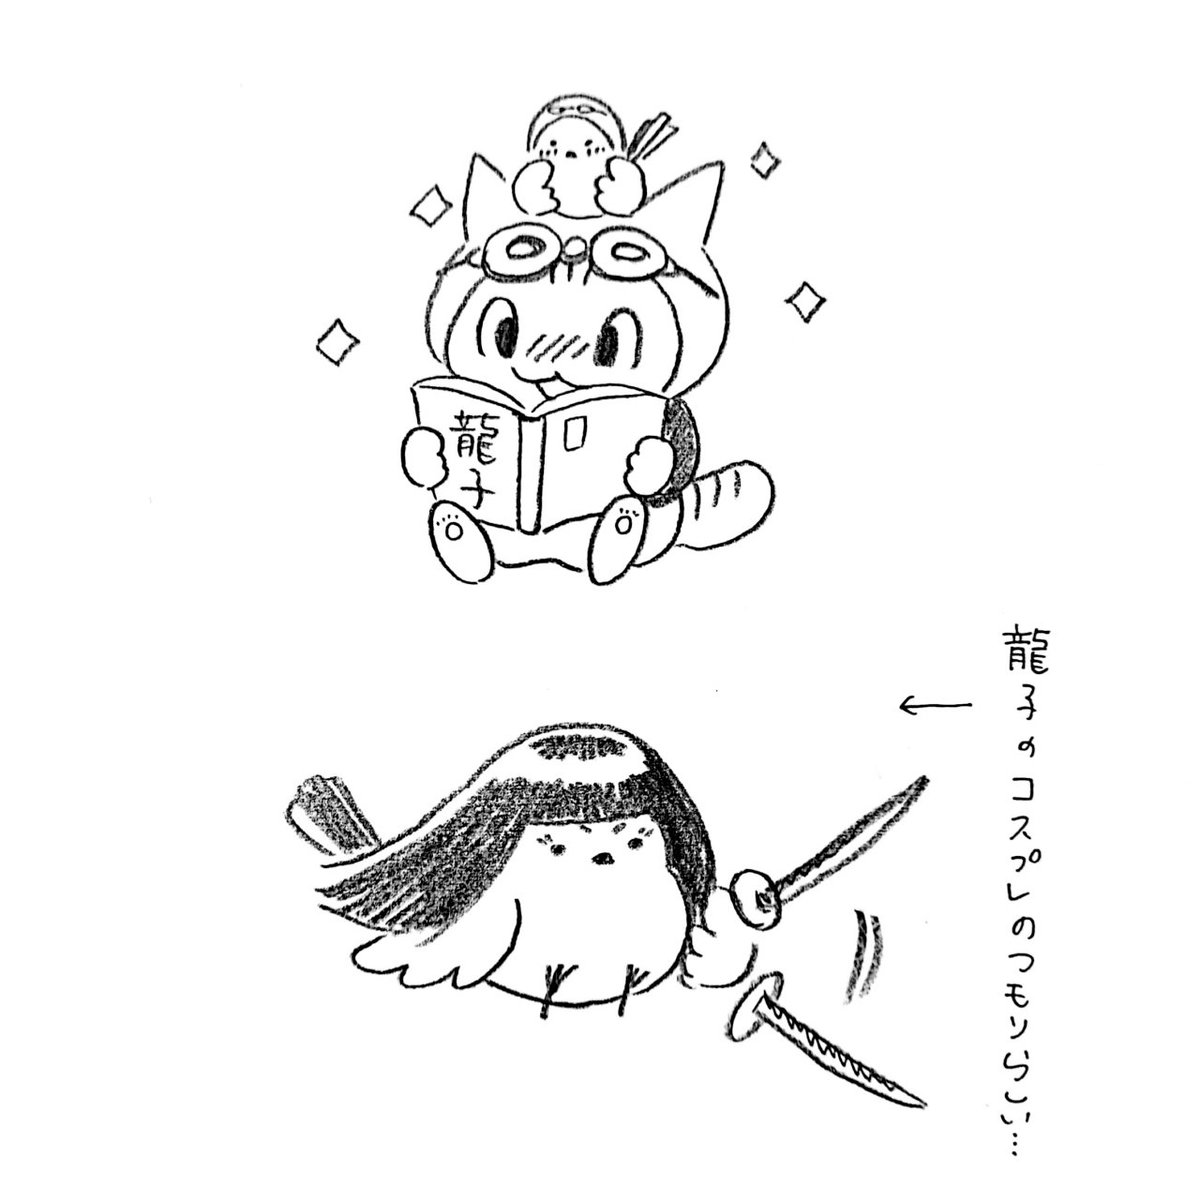 漫画「龍子」に激ハマりするニャン太とおもち。
バイクで地下鉄の中に乗り込むシーンが一番好きニャー>🐈️
ジュリ!(龍子みたいに強くなりたい!)>🕊️ 